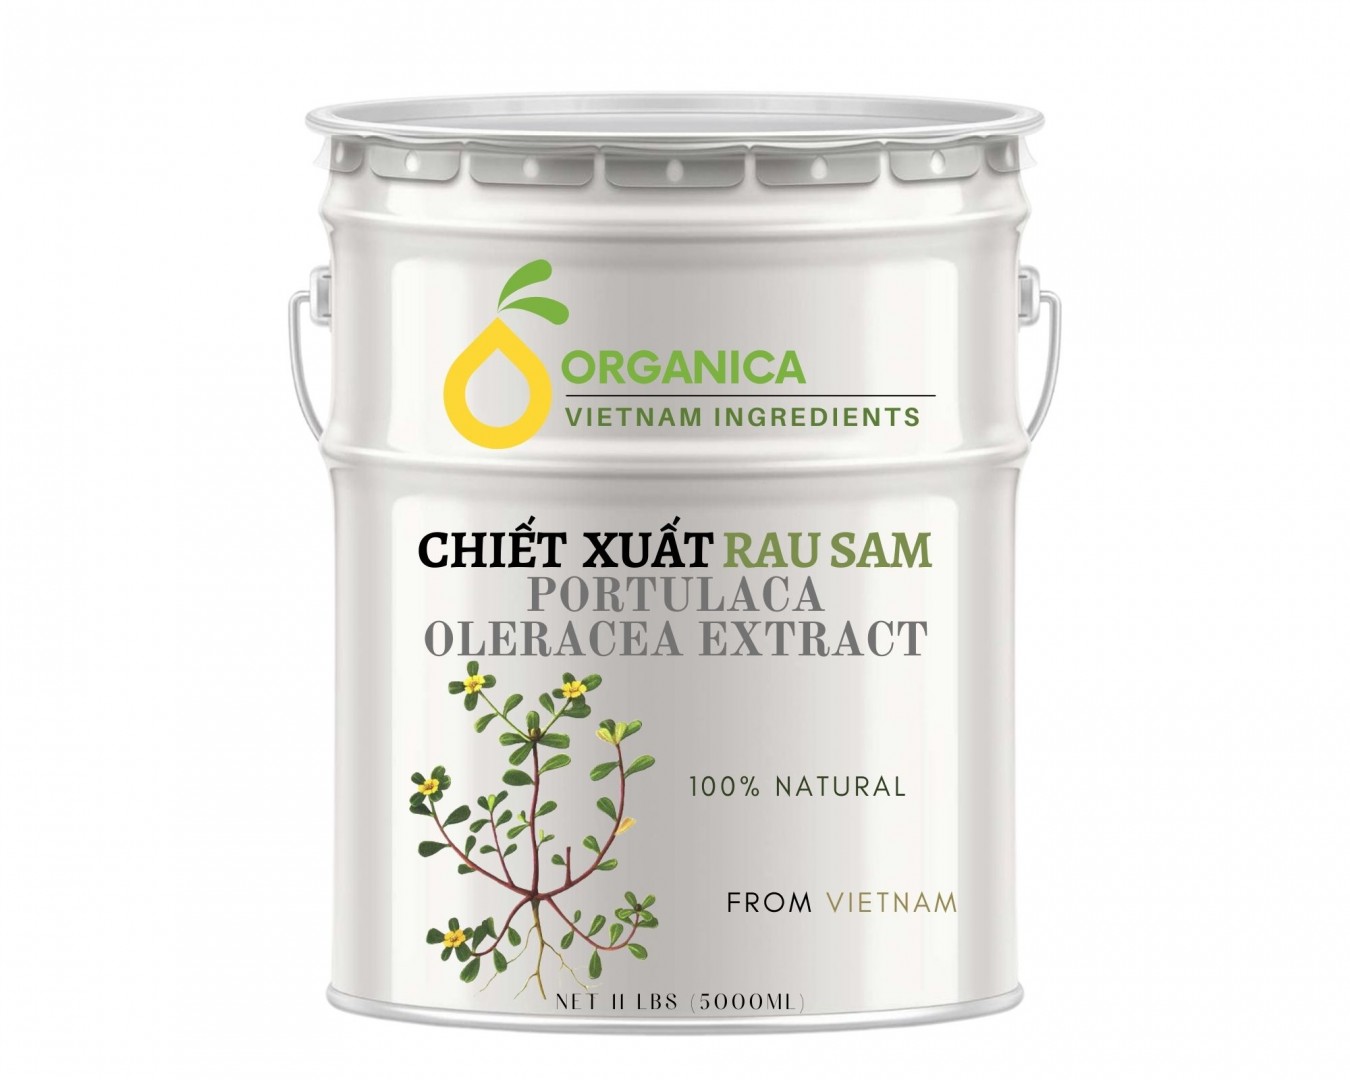 Chiết xuất rau sam (Purslane extract)